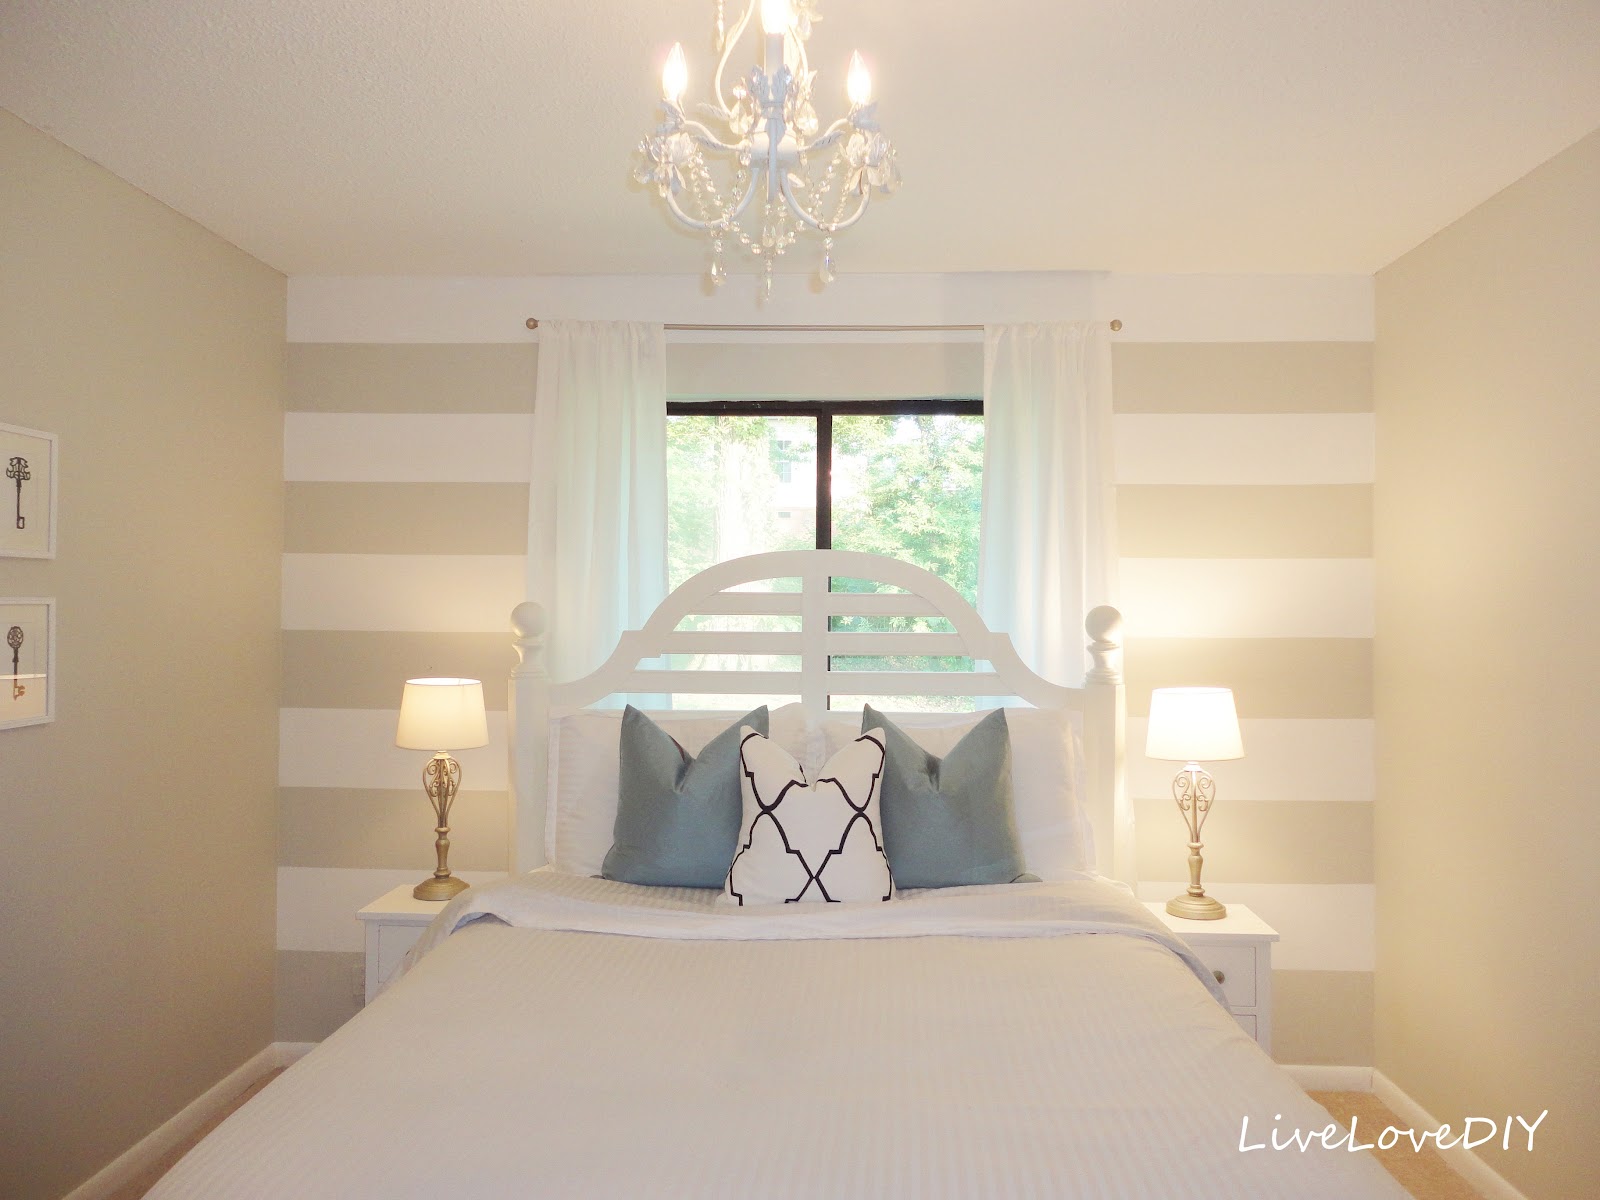 LiveLoveDIY: DIY Striped Wall Guest Bedroom Makeover